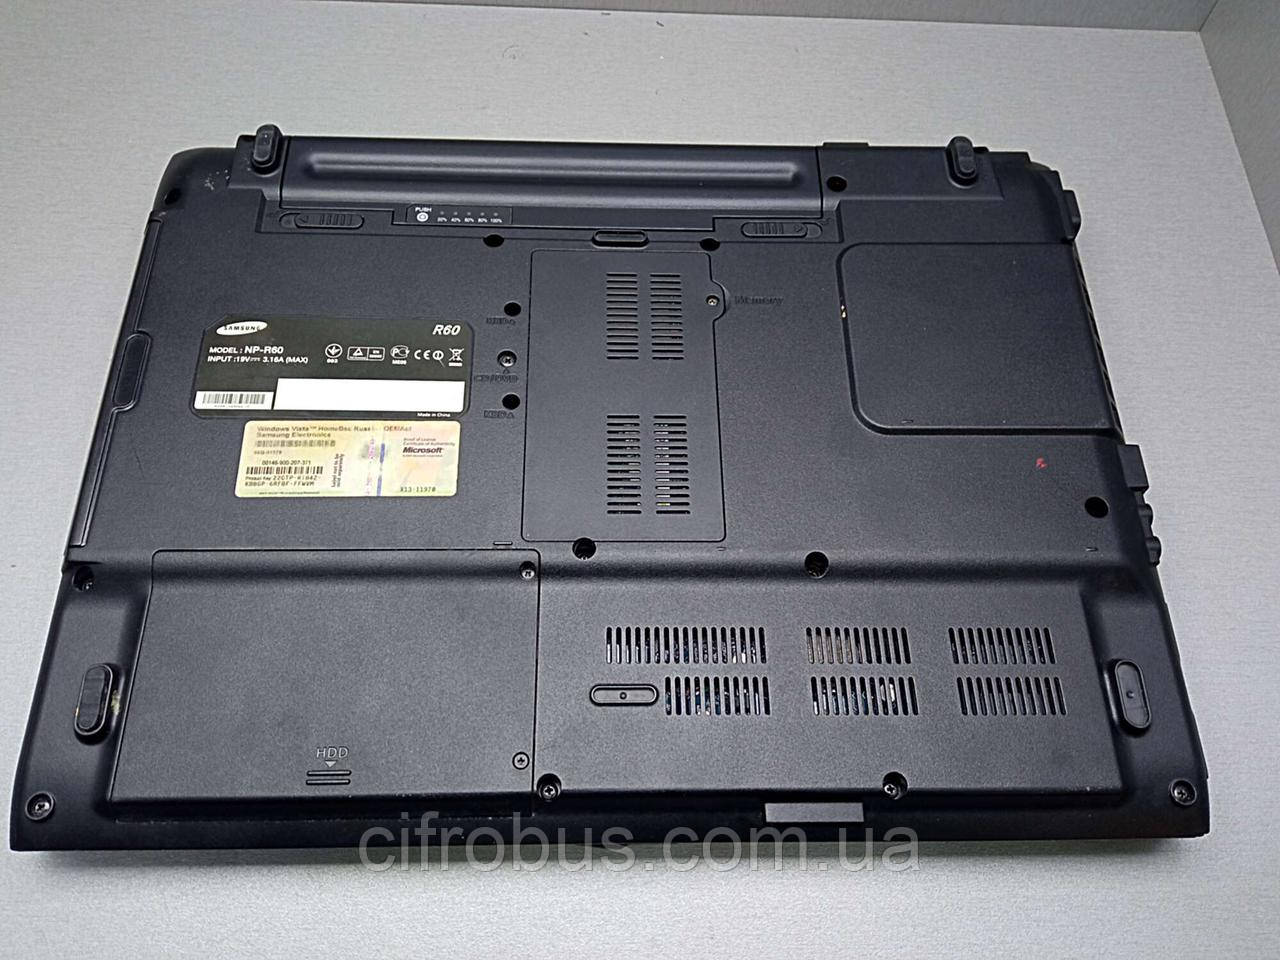 Ноутбук Б/У Samsung R60 (15.4"/1280х800/Intel Celeron M CPU 520 1.6Ghz/RAM  4GB/HDD 120GB/Radeon Xpress 1250) — Купить Недорого на Bigl.ua (1774123218)